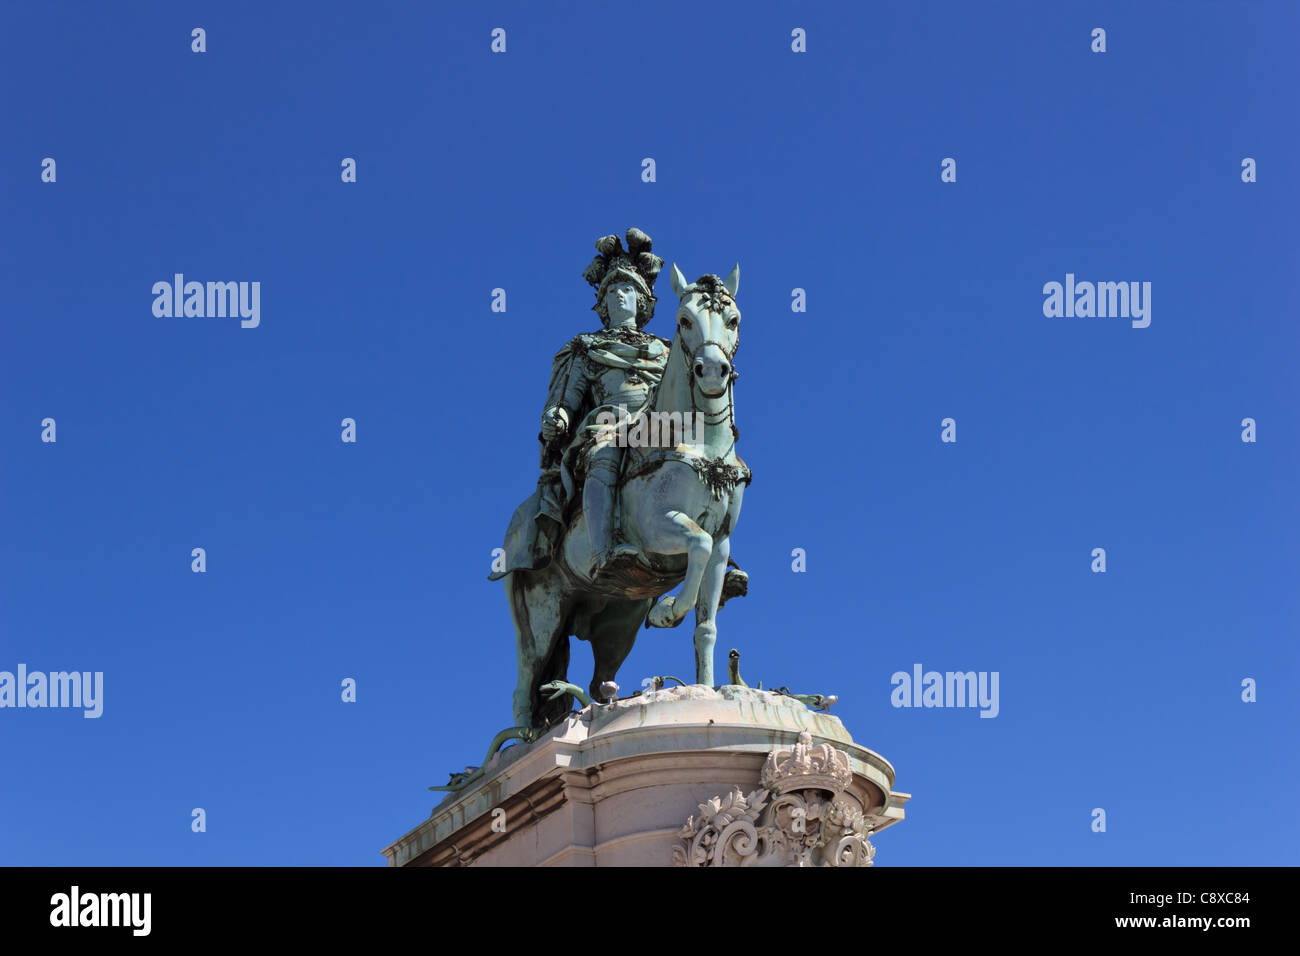 Une statue équestre à Lisbonne (Portugal) Banque D'Images